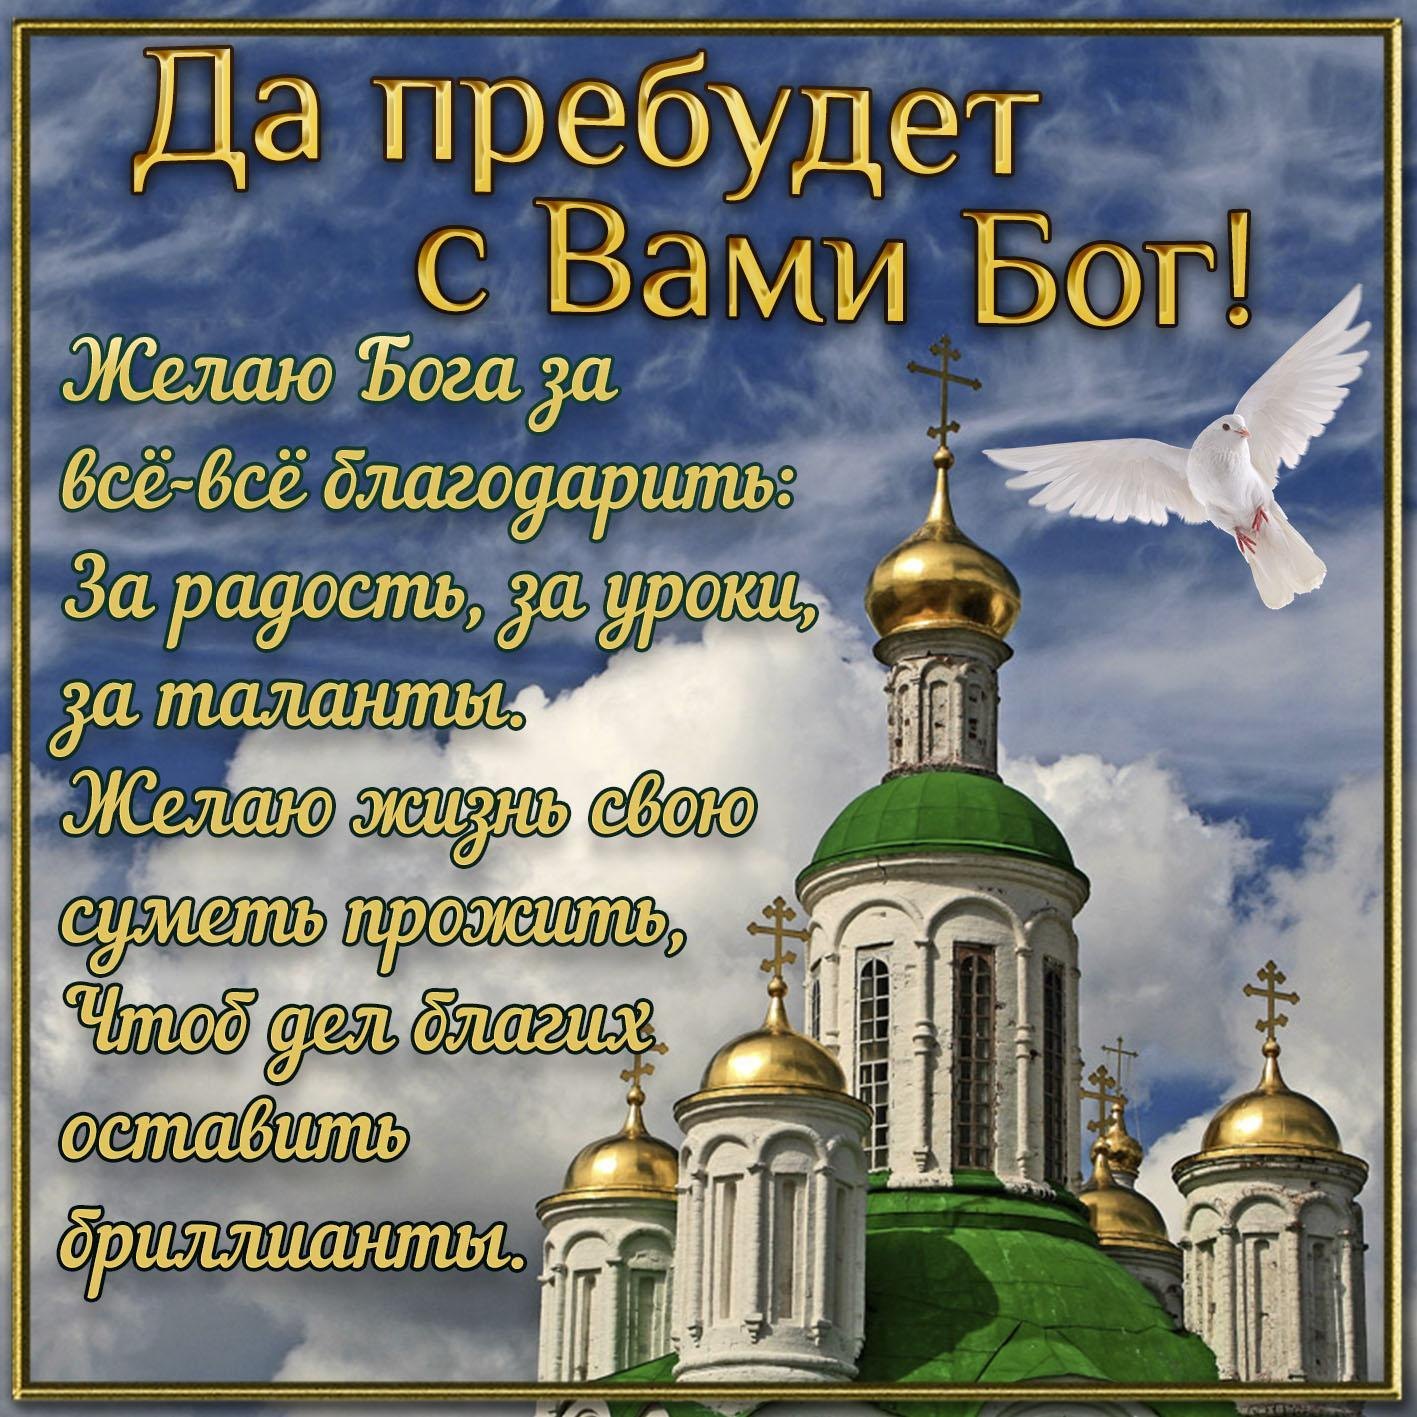 Открытка с днем рождения православному мужчине - фото и картинки  abrakadabra.fun